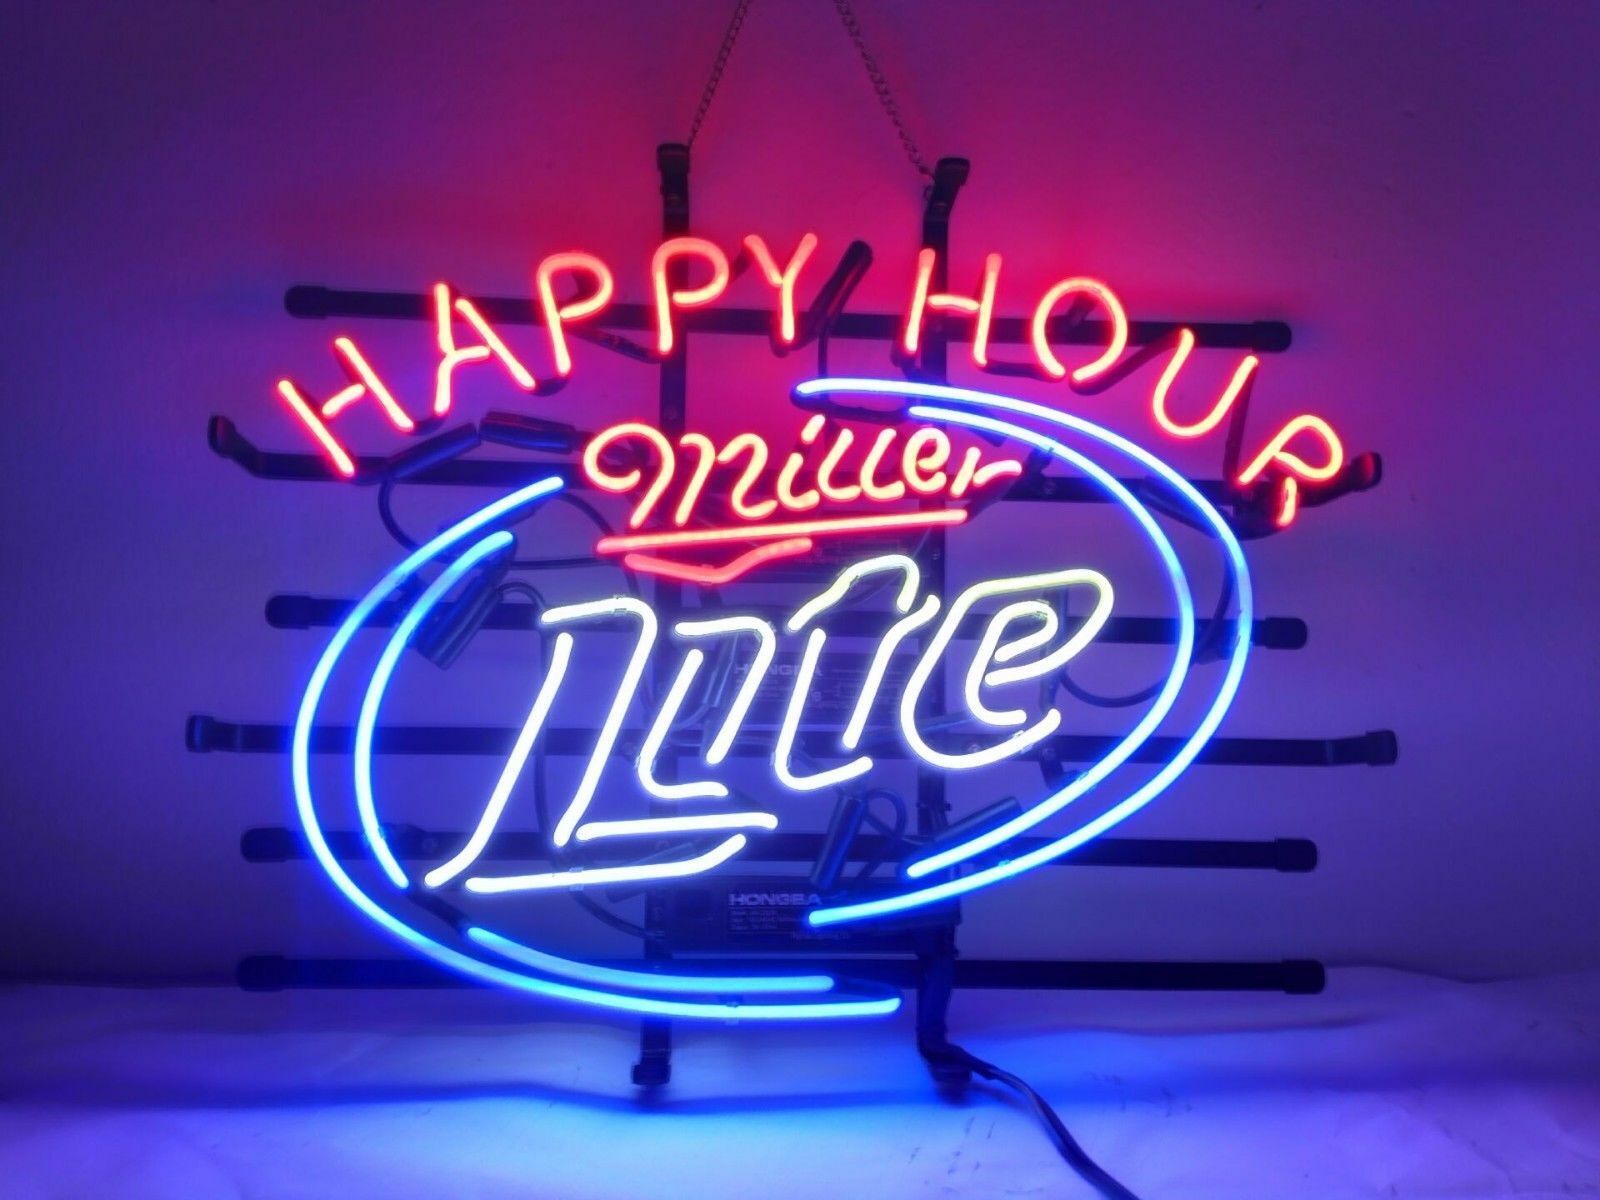 New Miller Lite Happy Hour Neon Light Sign 20